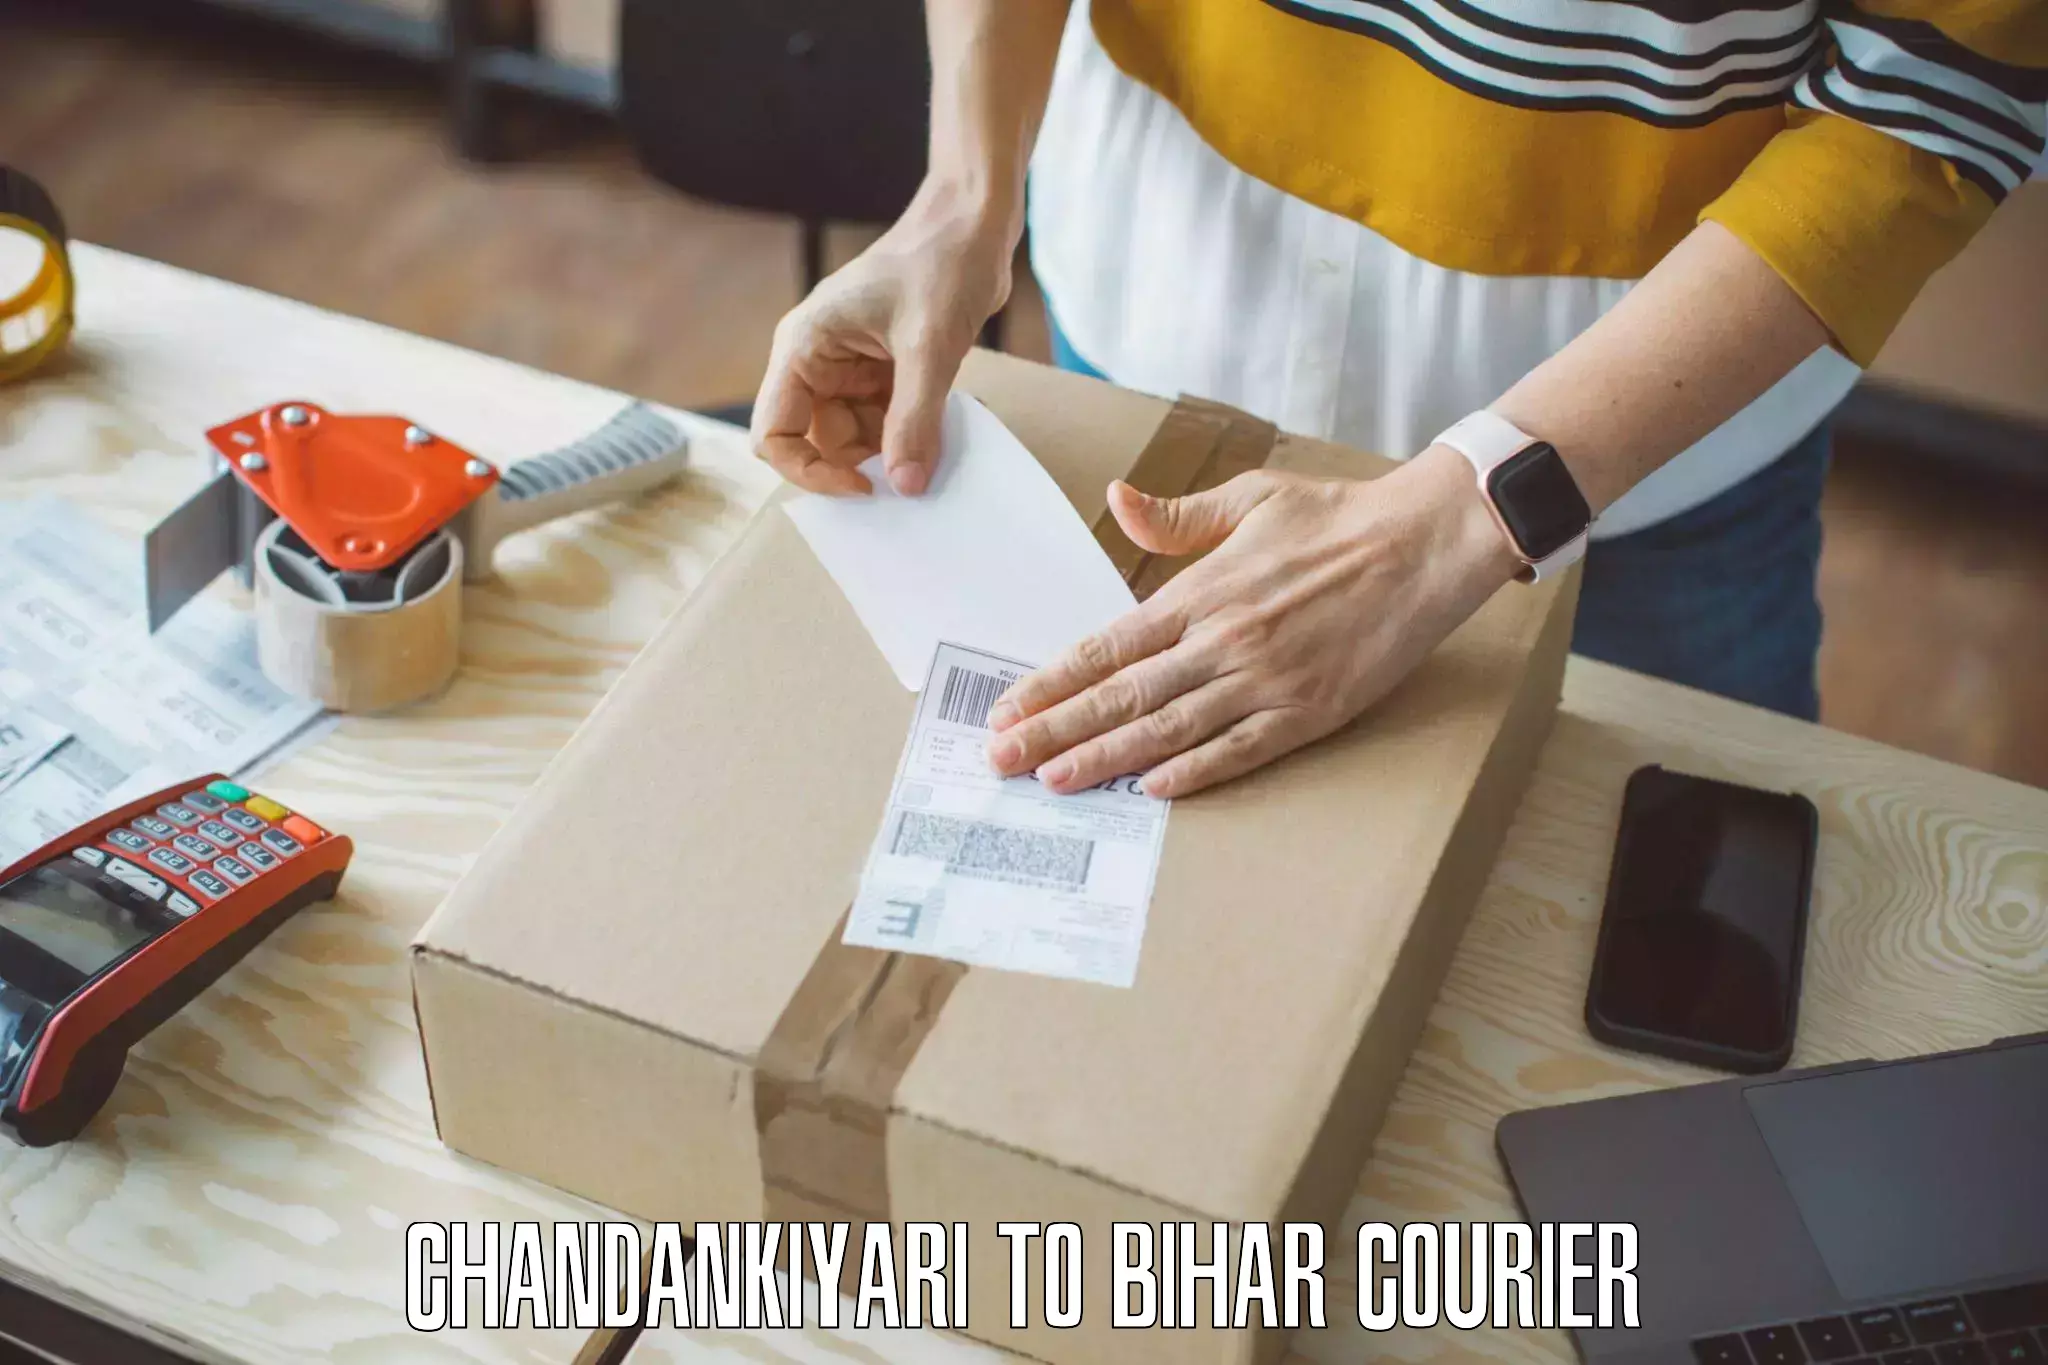 Trusted furniture movers Chandankiyari to Thakurganj